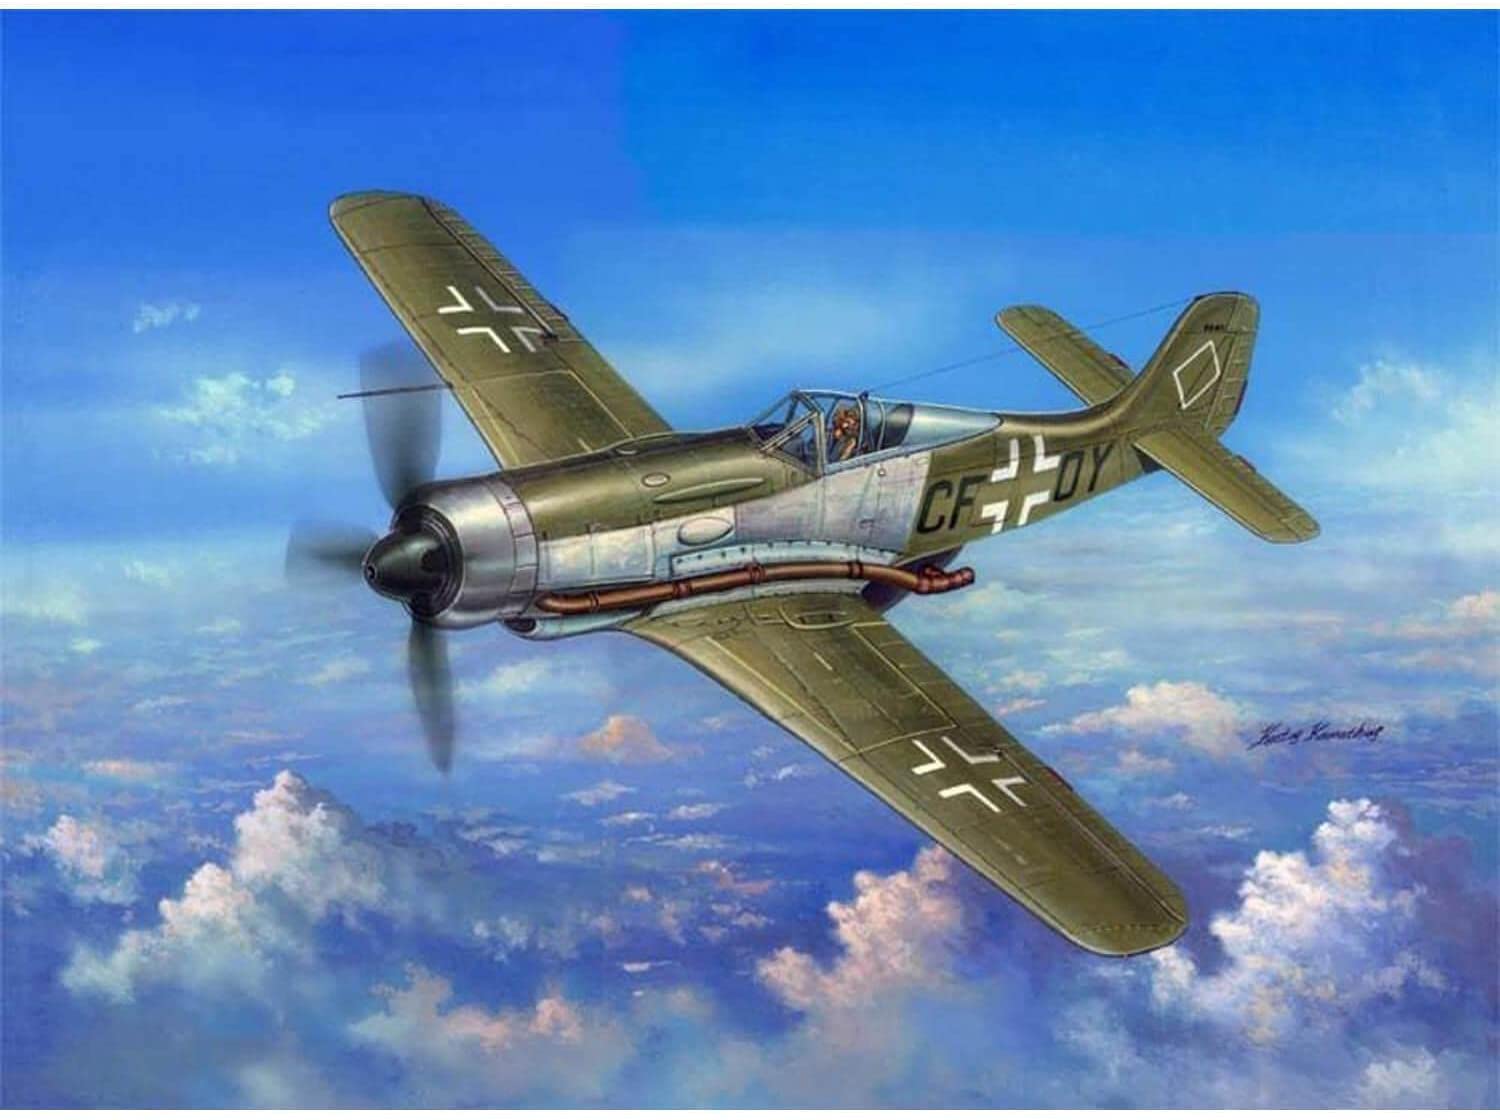 ホビーボス 1/48 エアクラフトシリーズ ドイツ空軍 フォッケウルフ Fw190V18 プラモデル 81747